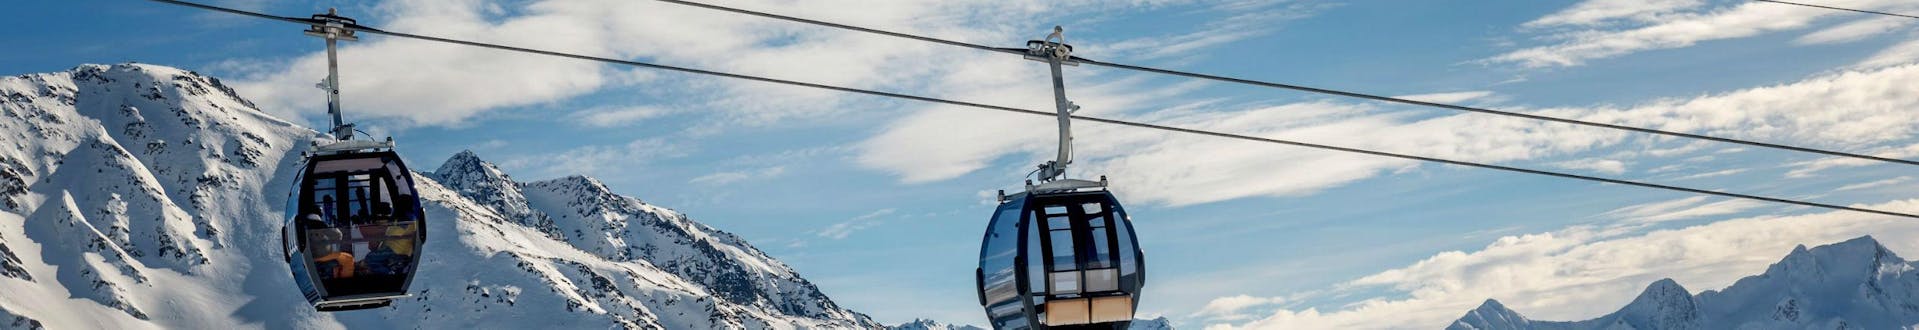 Ein Blick auf eine Gondelbahn im Skigebiet Disentis, wo örtliche Skischulen eine Reihe an Skikursen anbietet.